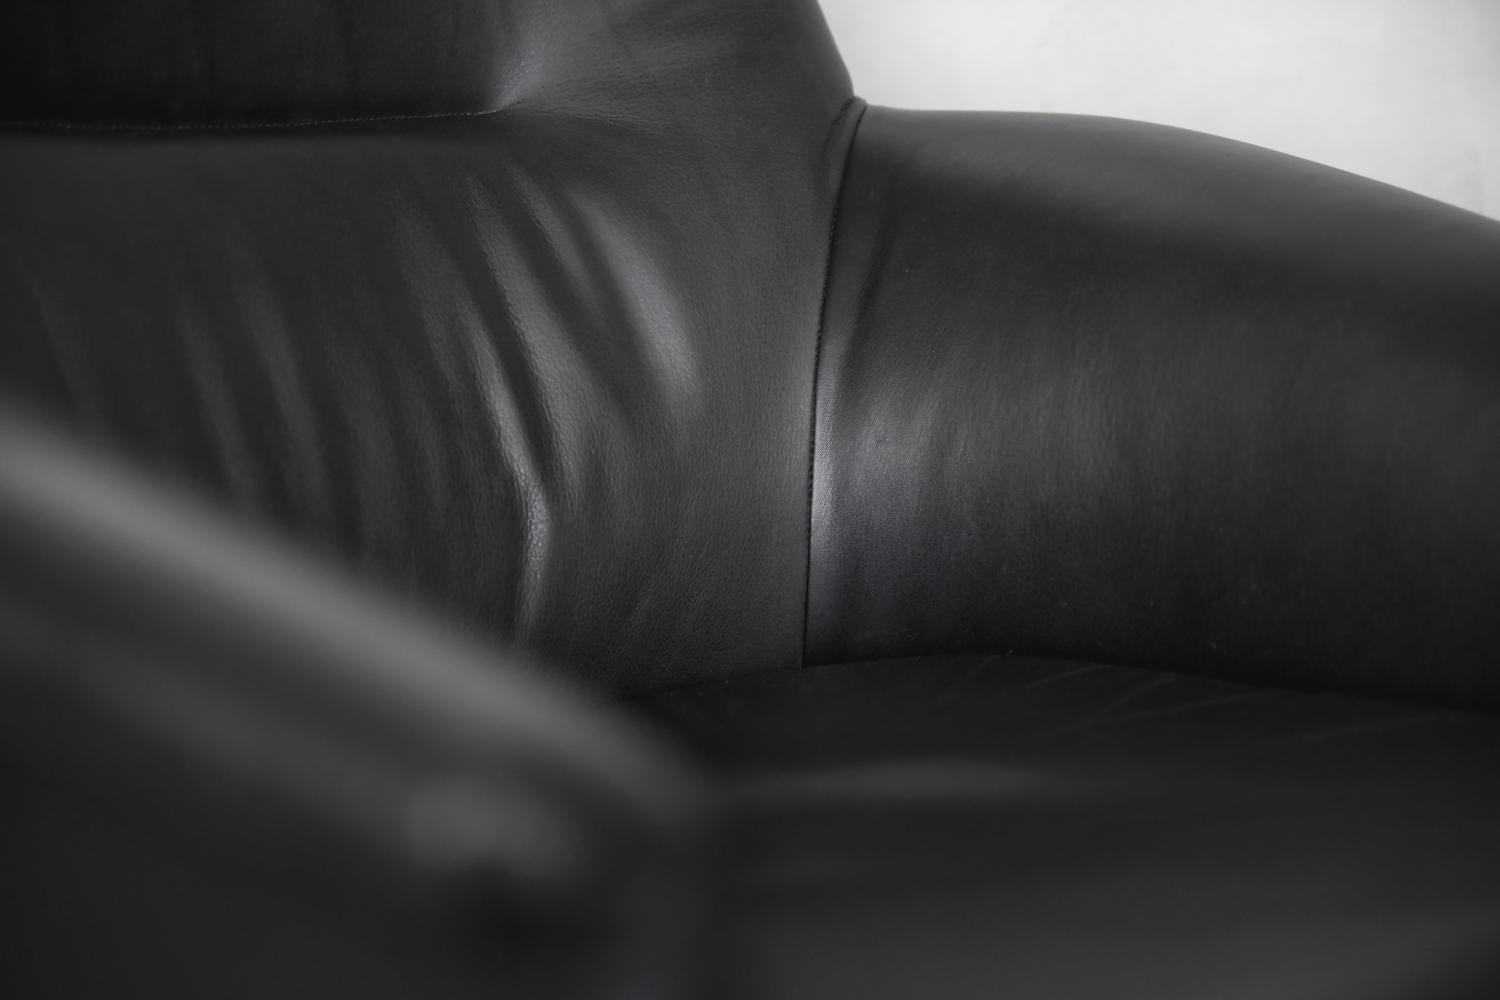 modern black swivel chair